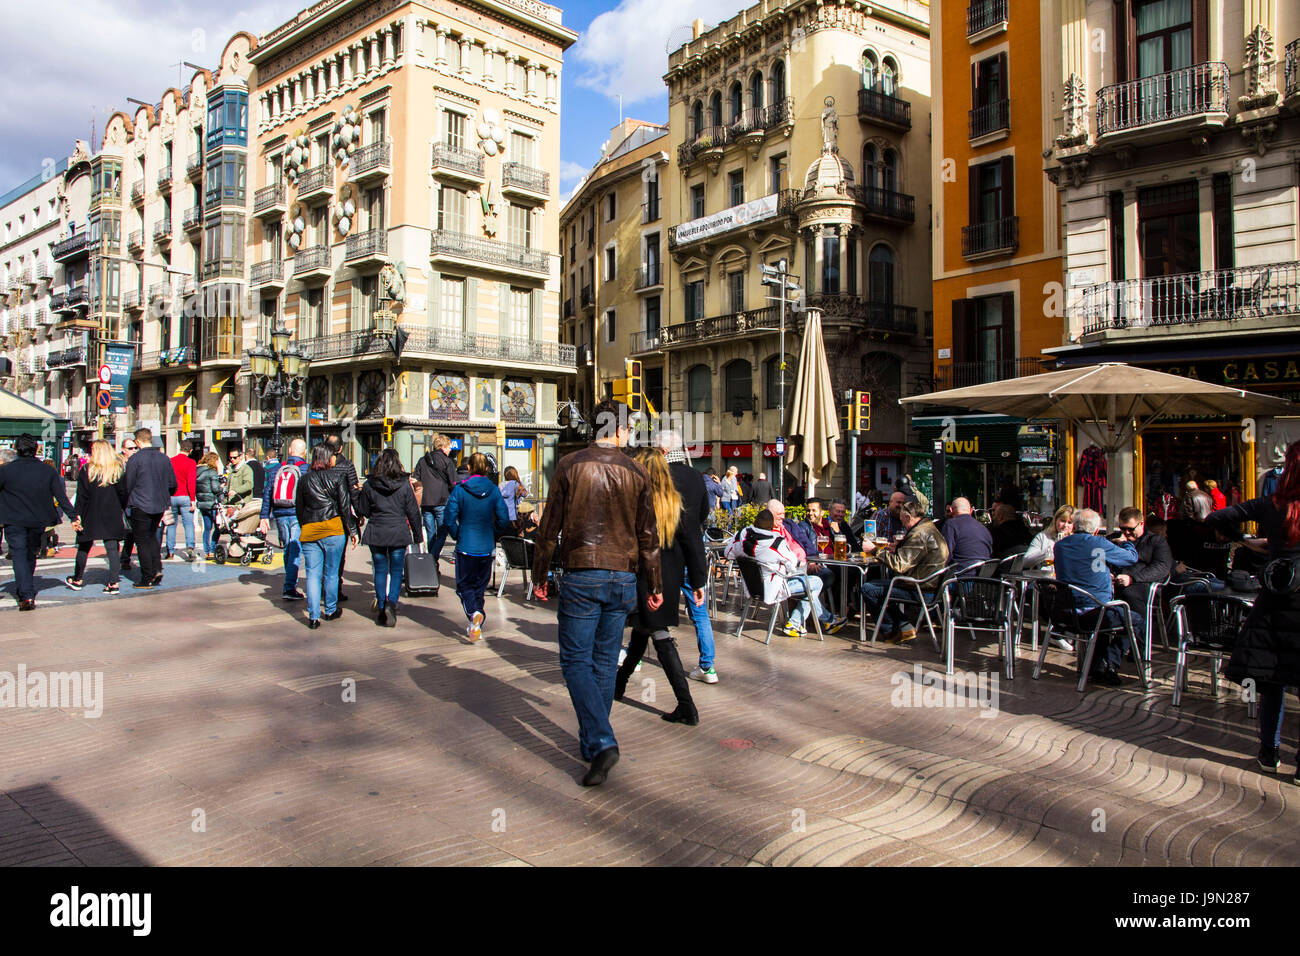 La Rambla - oder Las Ramblas - ist eine lebendige 1,2 km lange meist autofreie Promenade mit Cafés, Geschäften und Blumenläden in Barcelona, Spanien gefüttert Stockfoto